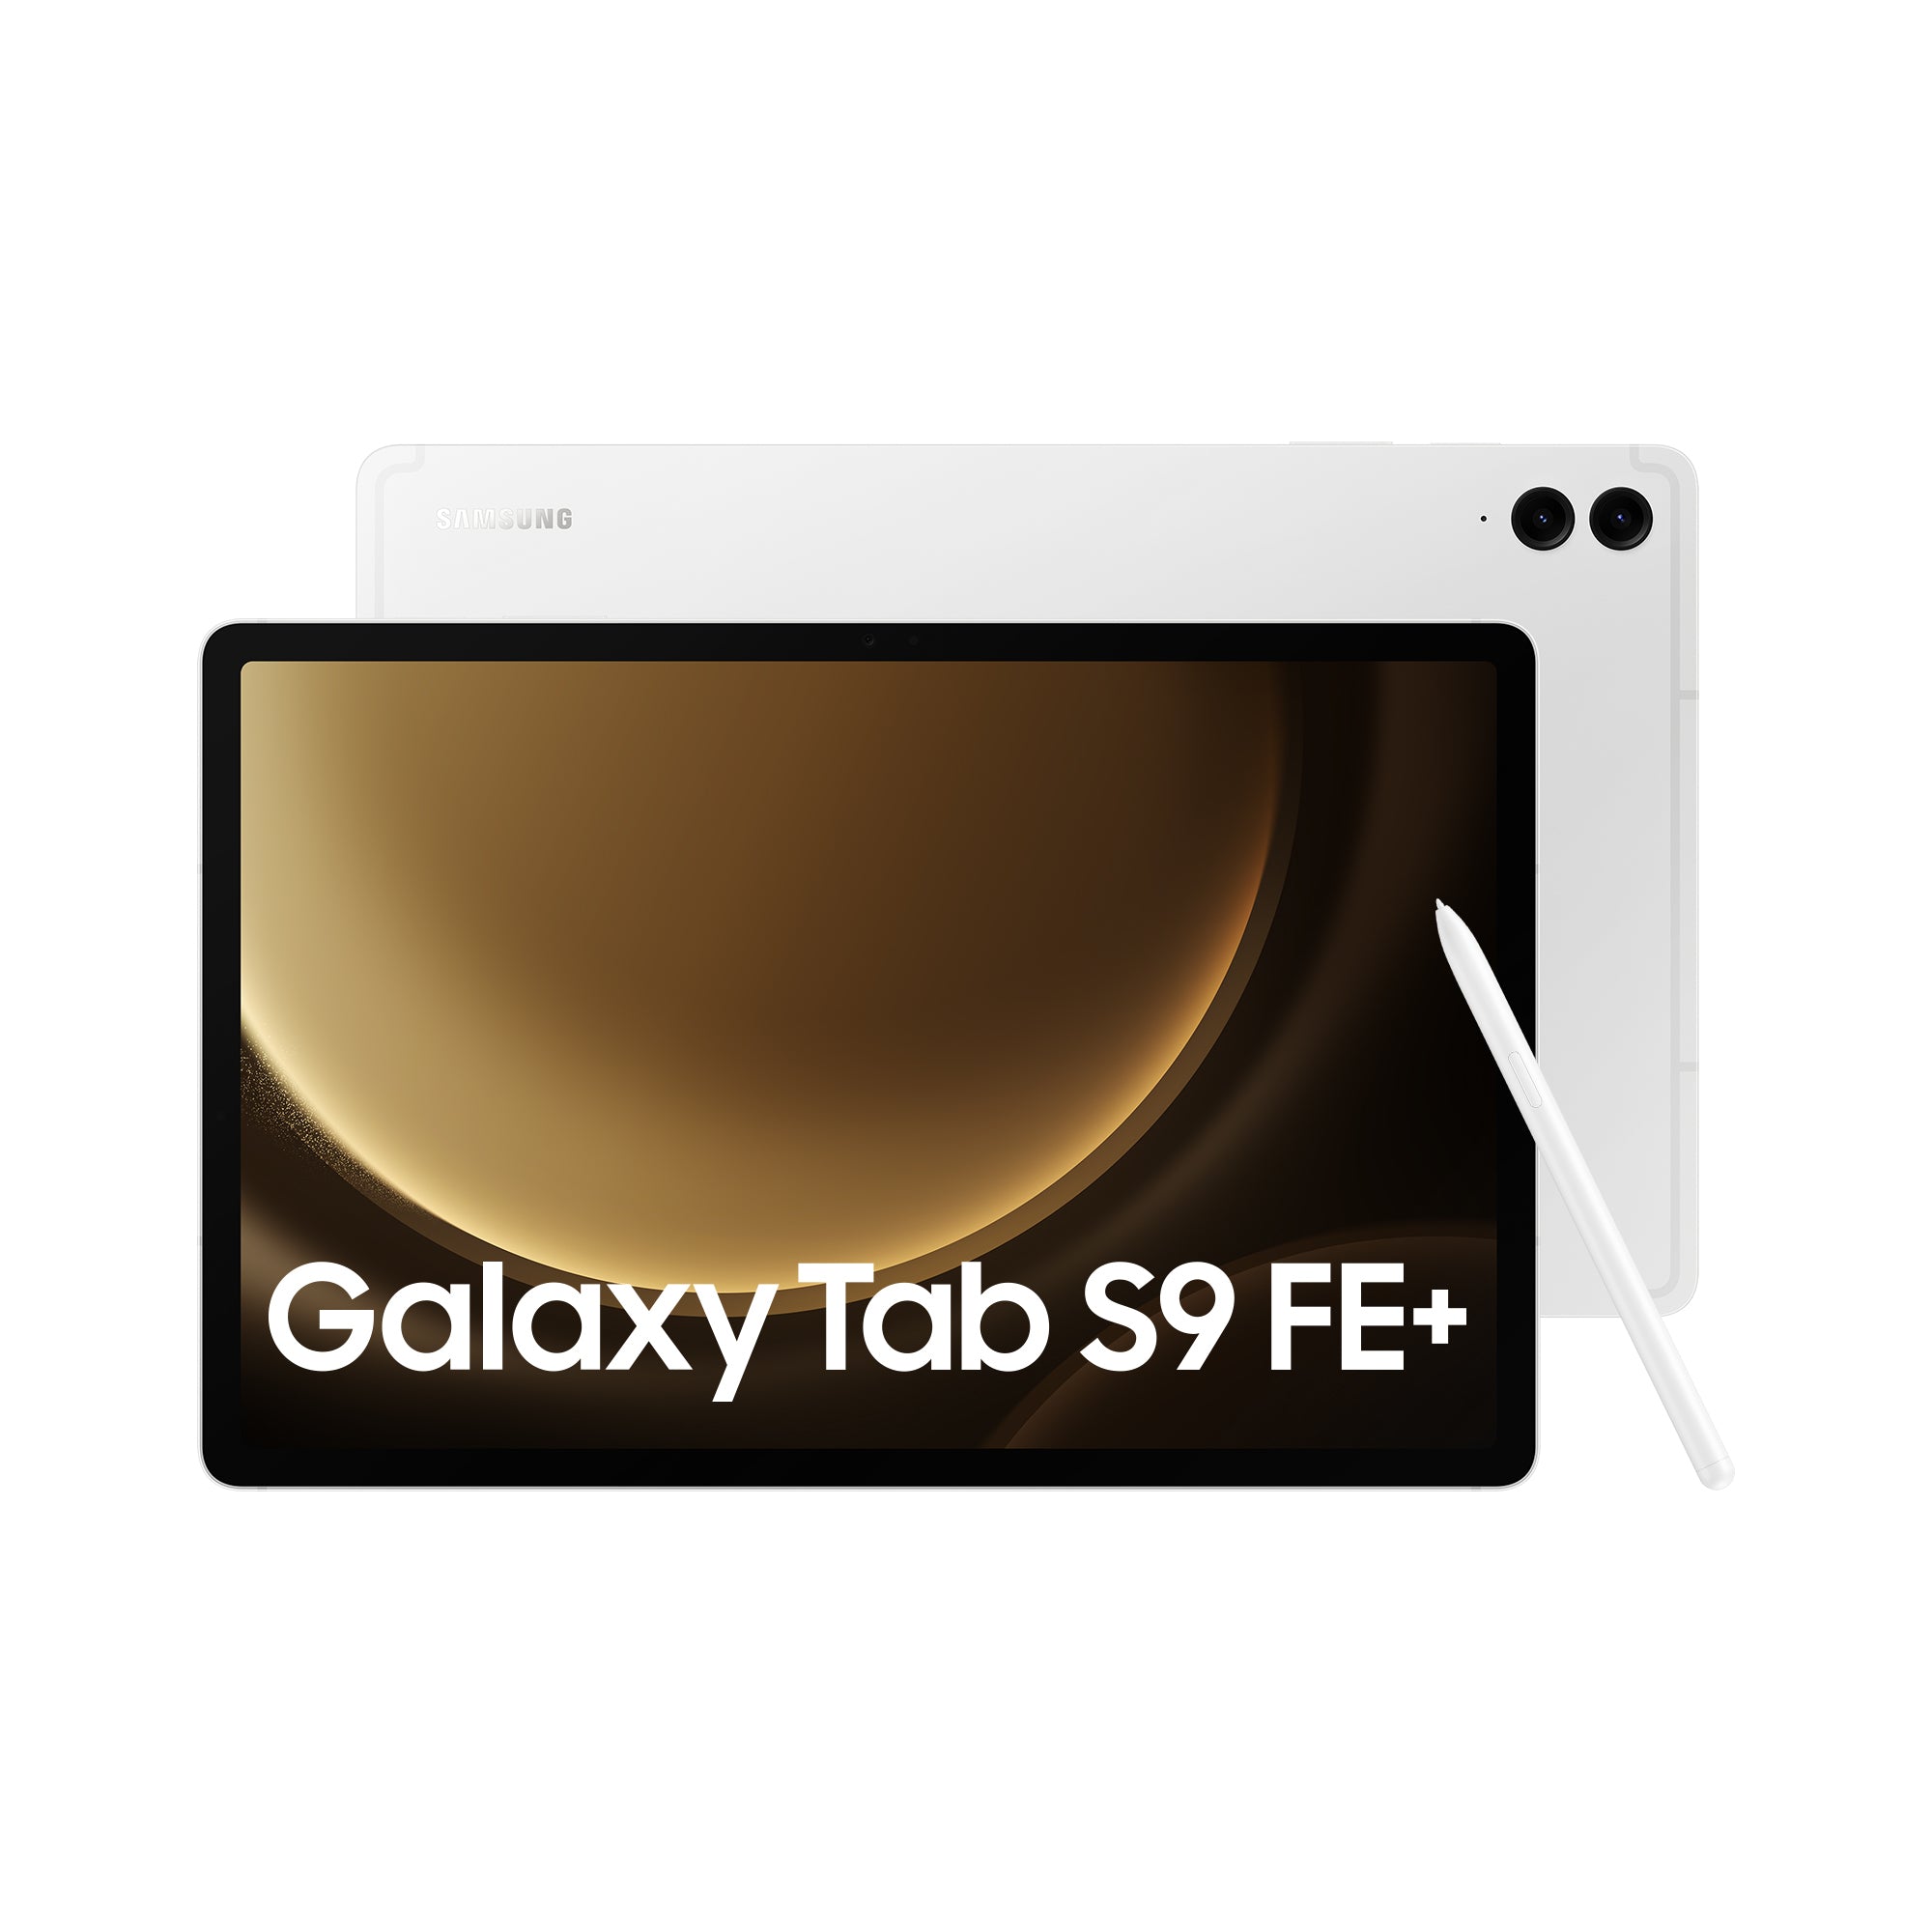 Samsunge Galaxy Tab S9 FE+ | WiFi | 256GB | Silber | GUT